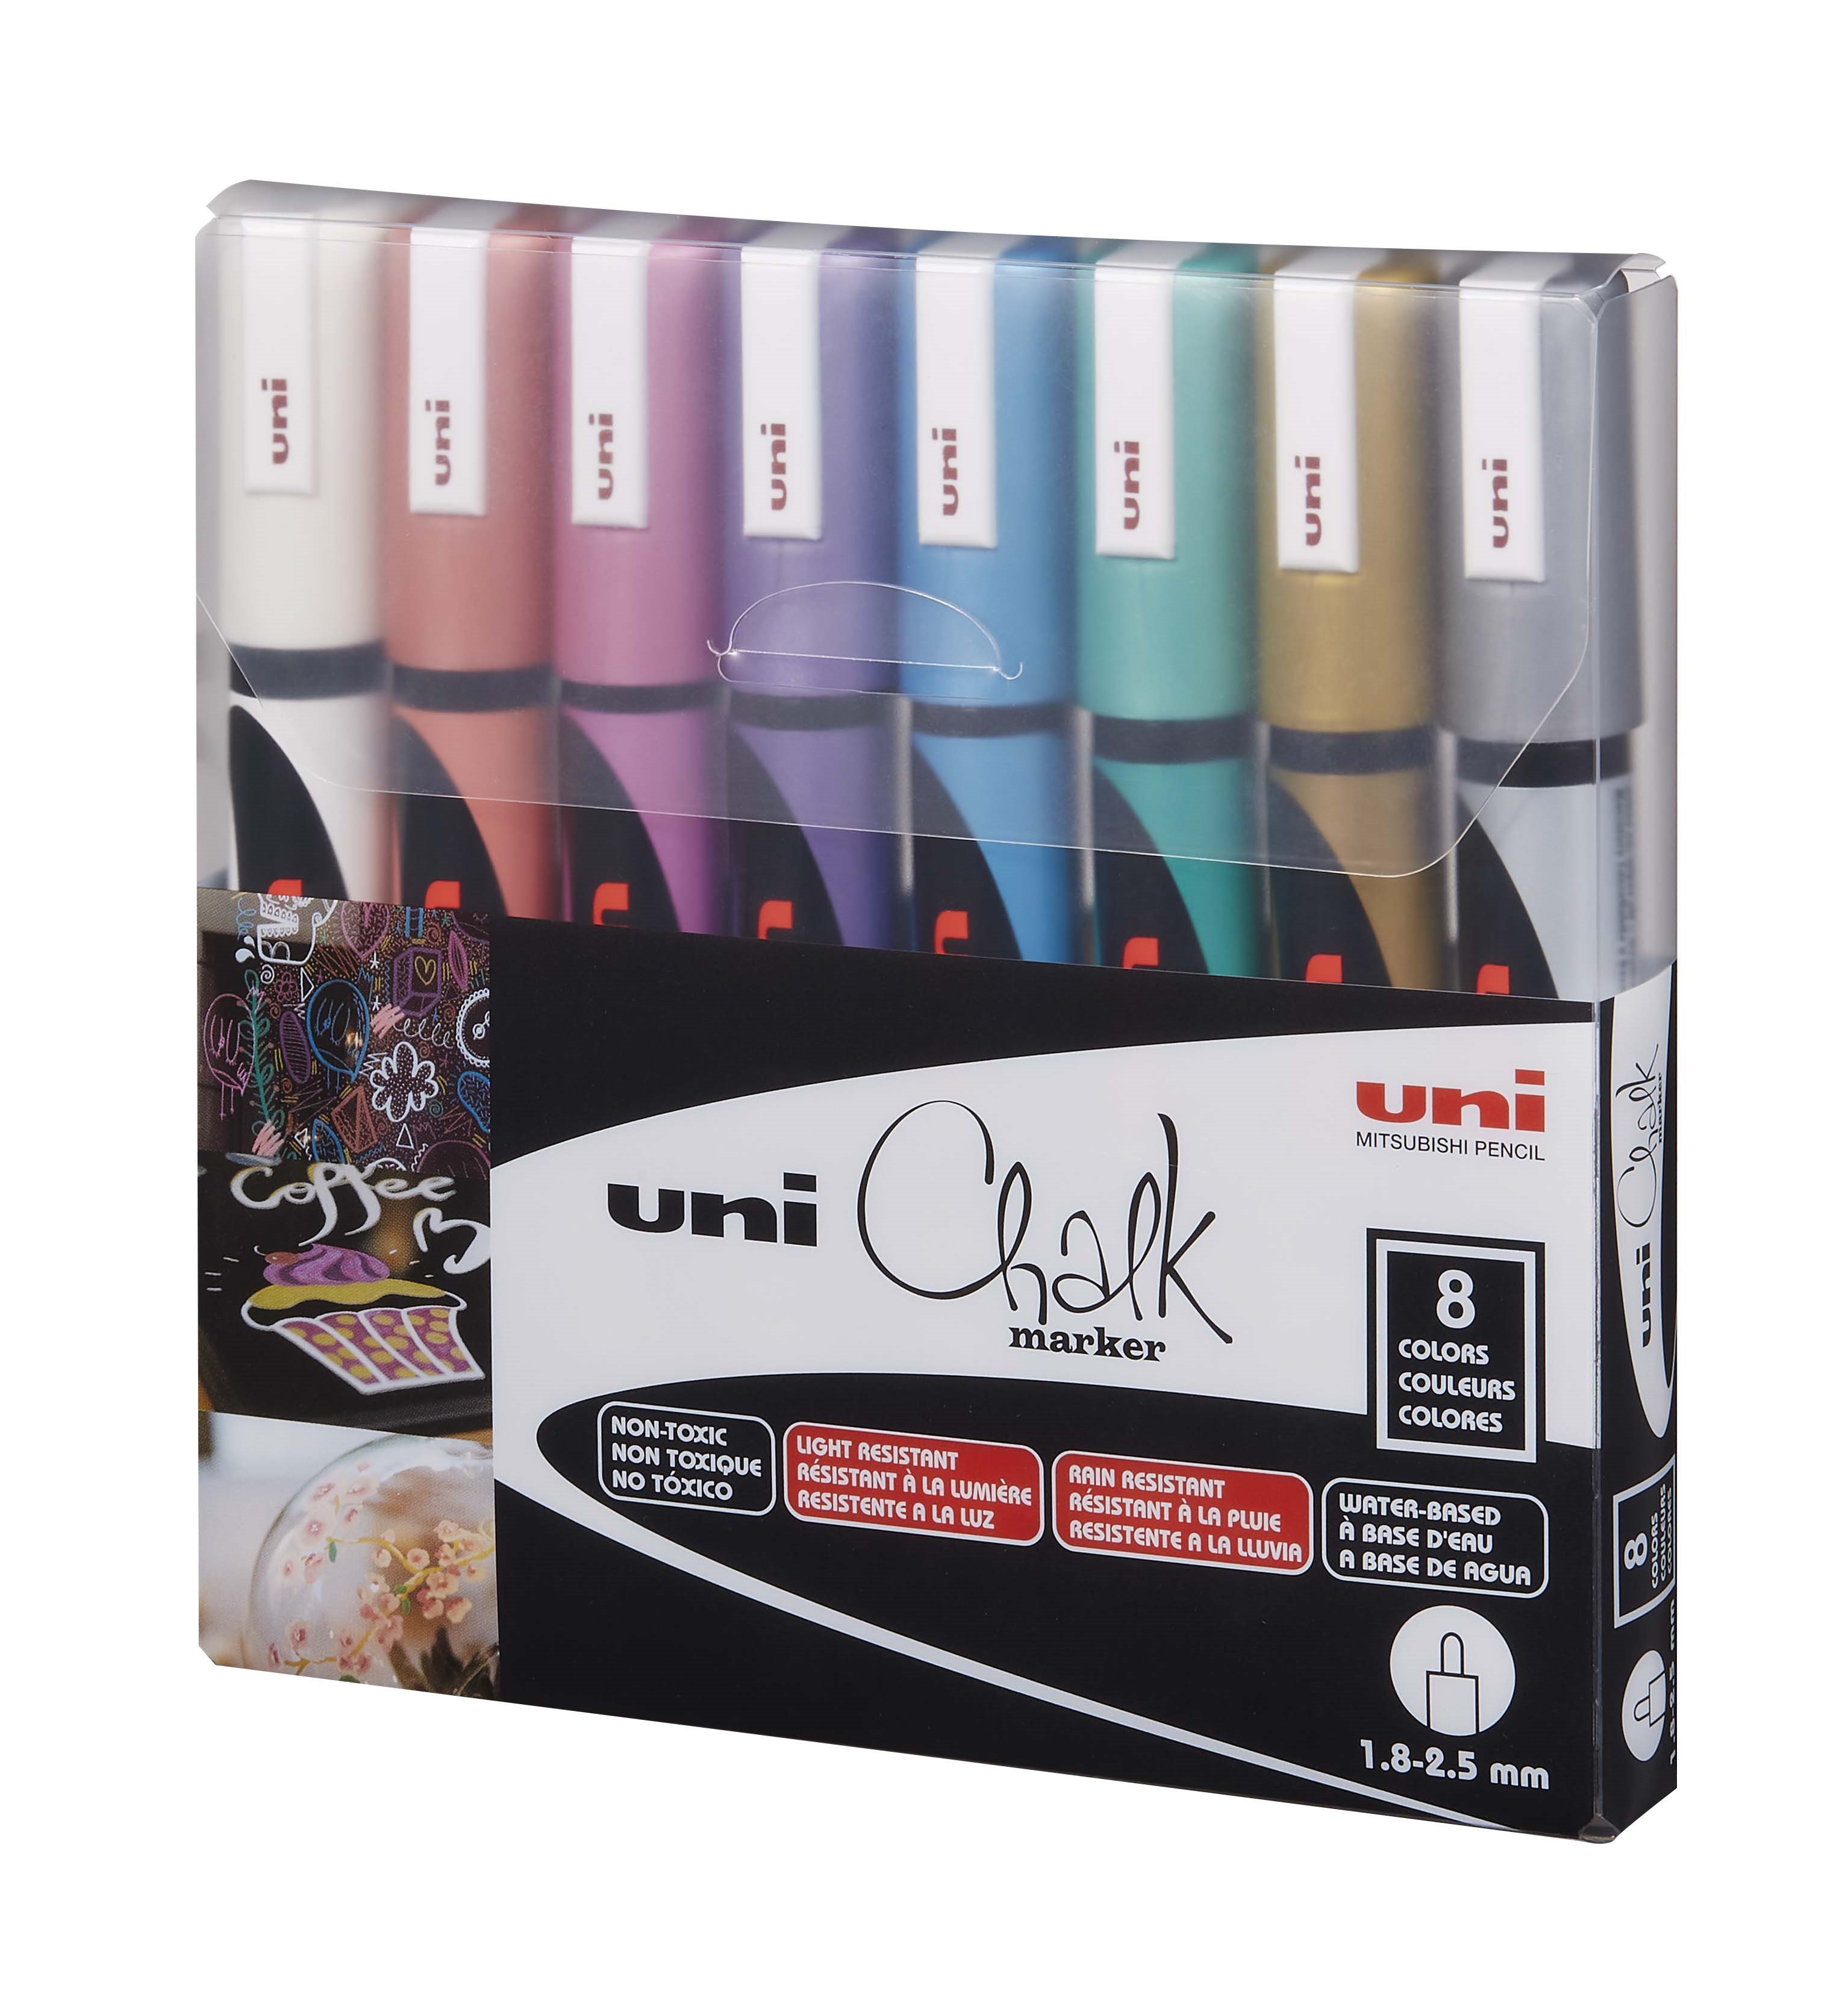 Uni - Chalkmarker 5M - Metallic colors, 8 pc - Leker